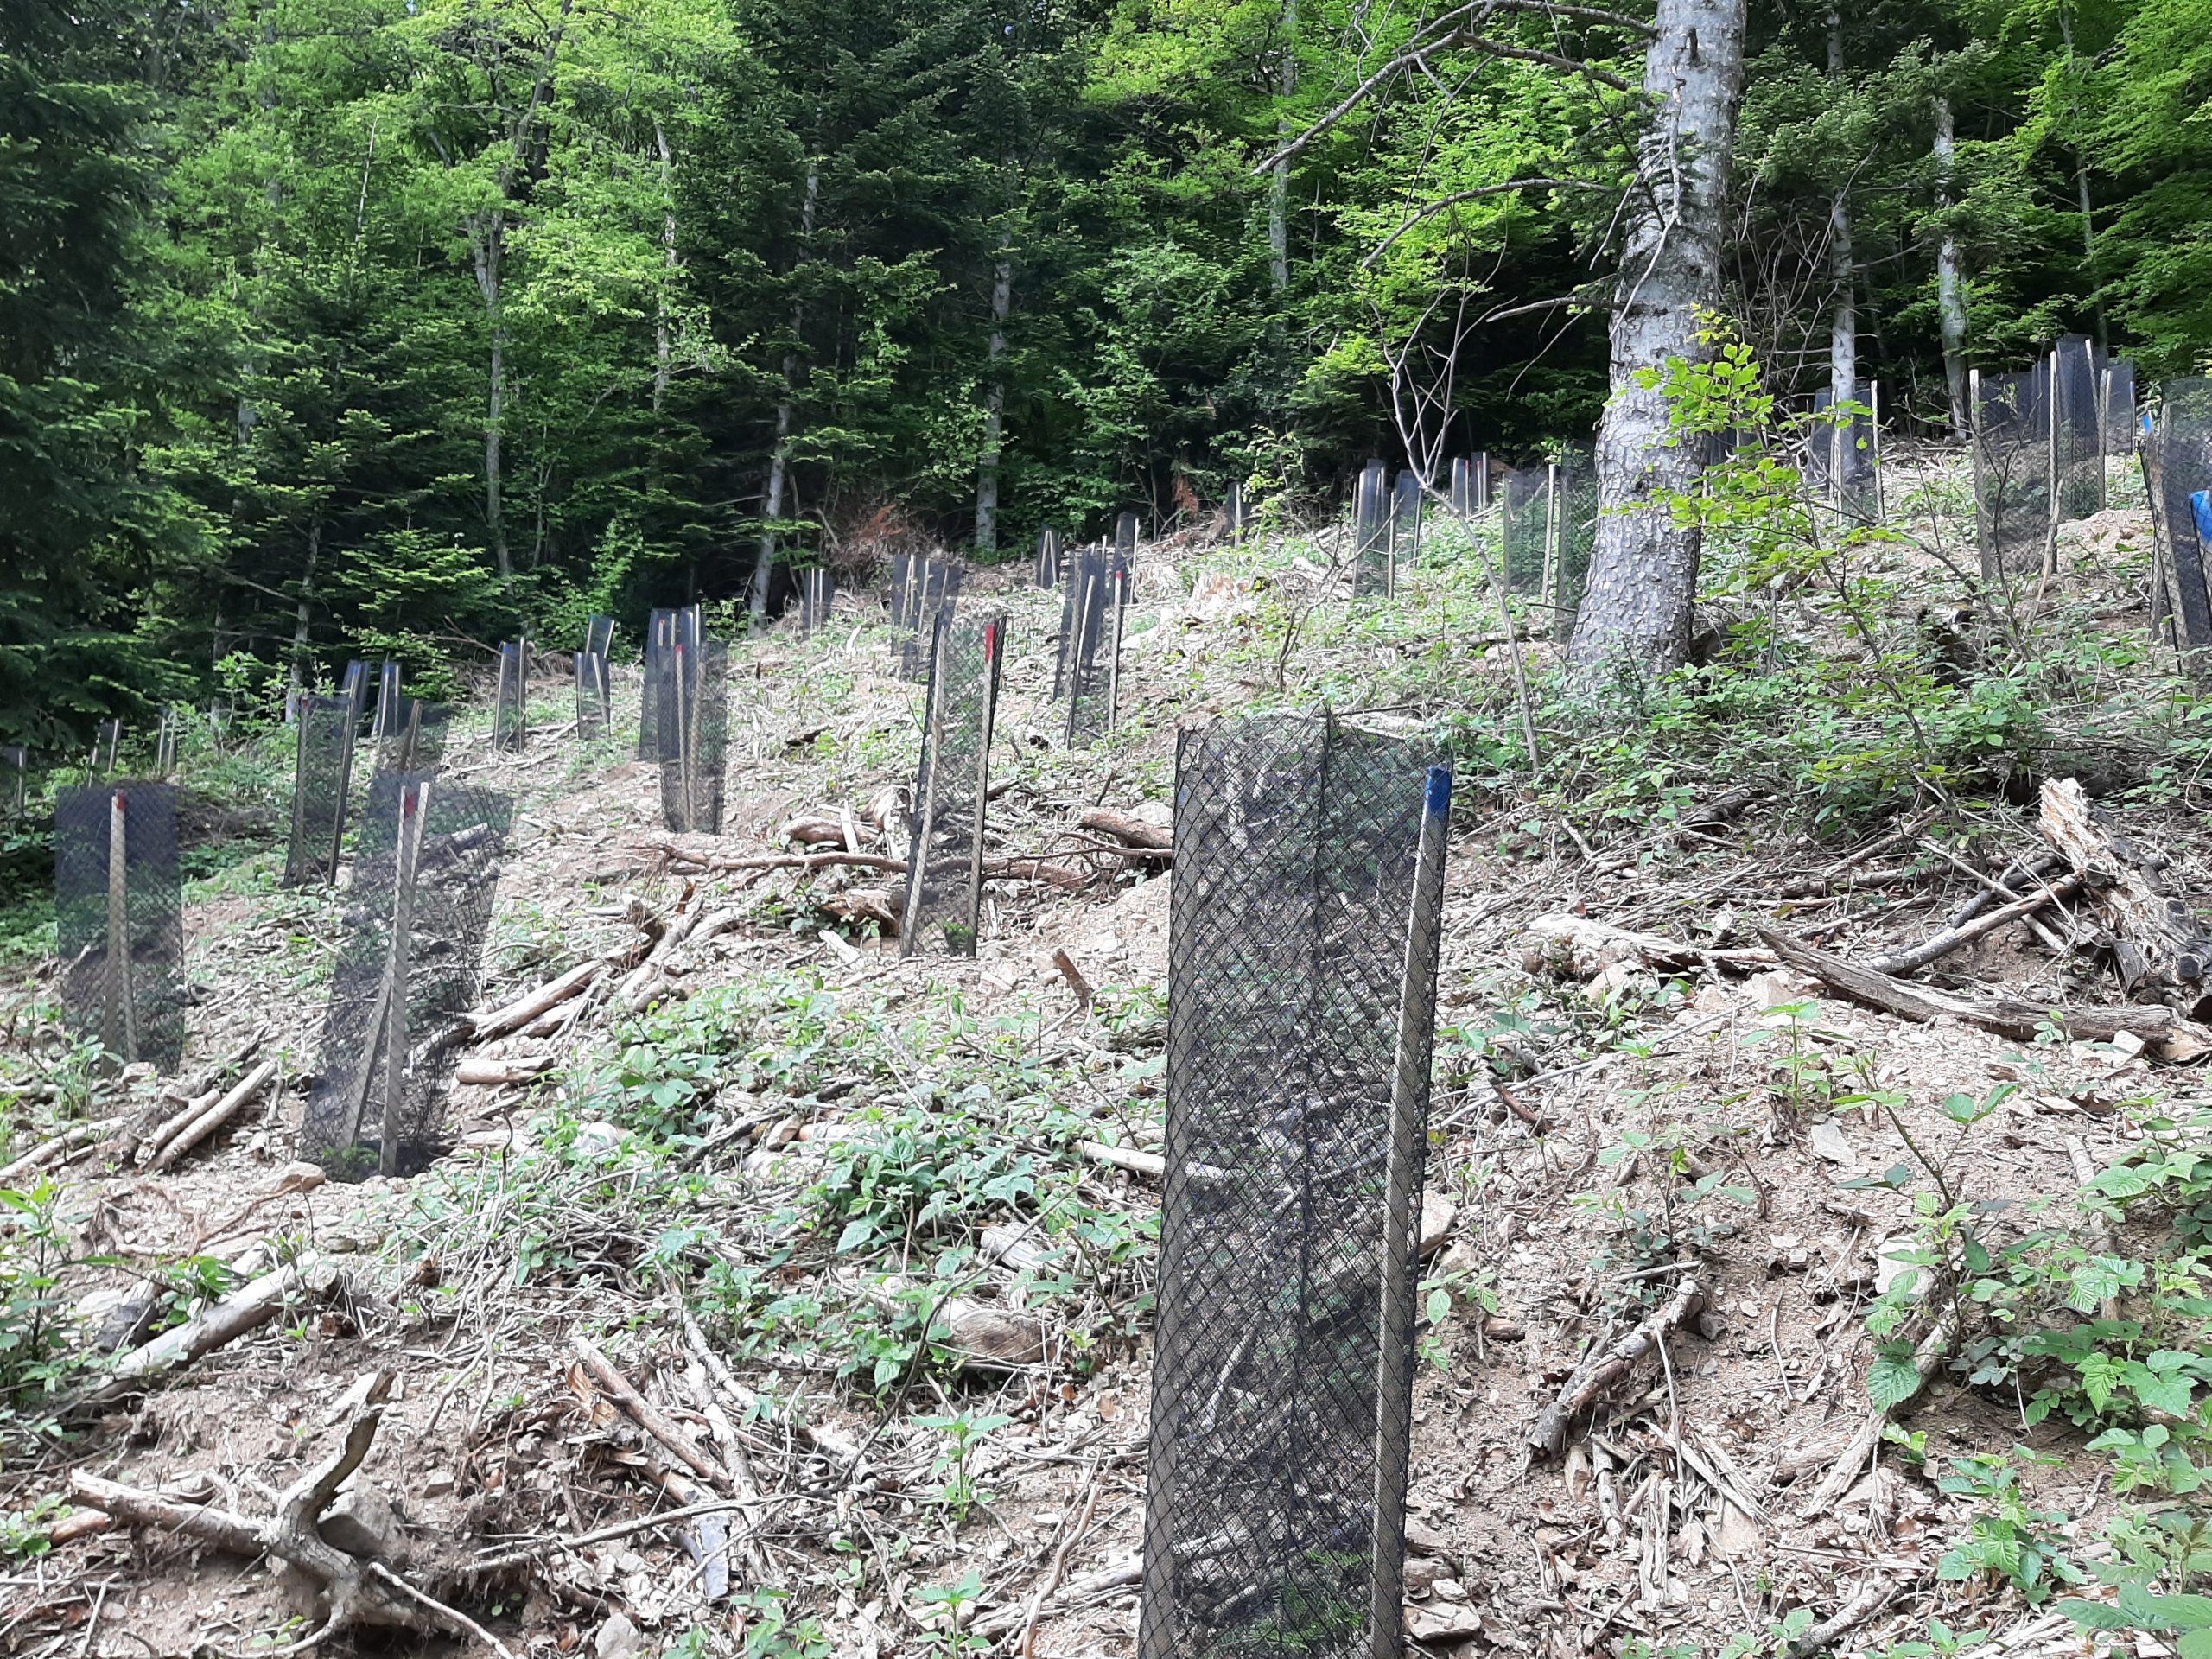 Quel rôle pour les forêts et la filière forêt-bois françaises dans  l'atténuation du changement climatique ?